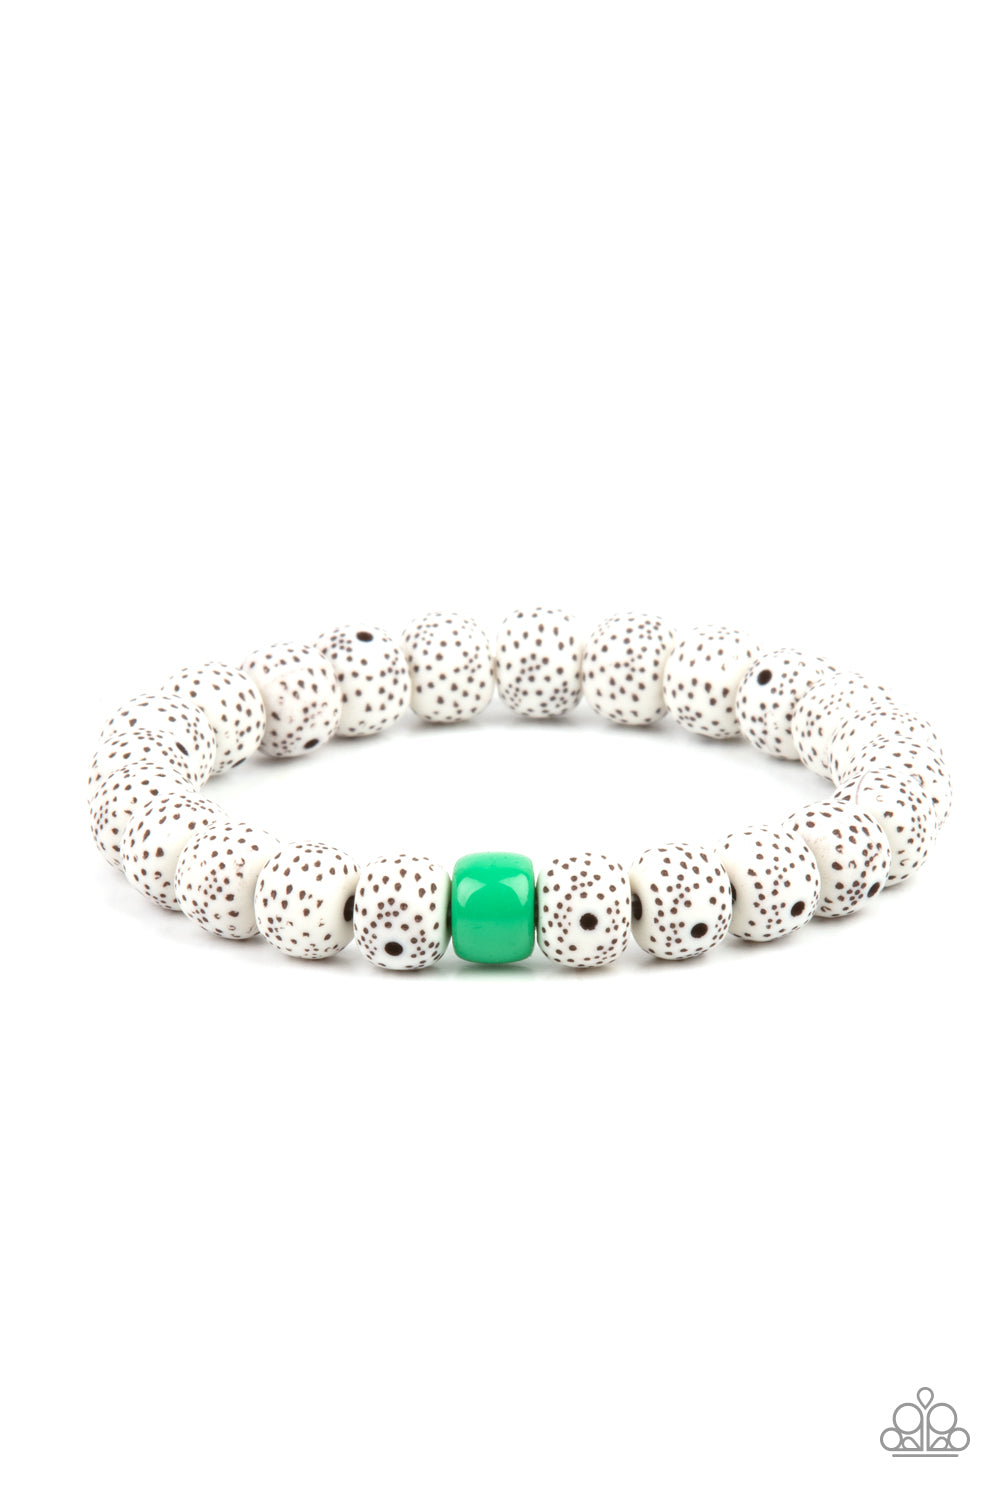 Paparazzi Bracelet ~ ZEN Second Rule - Green Faux Stone Bead Bracelet